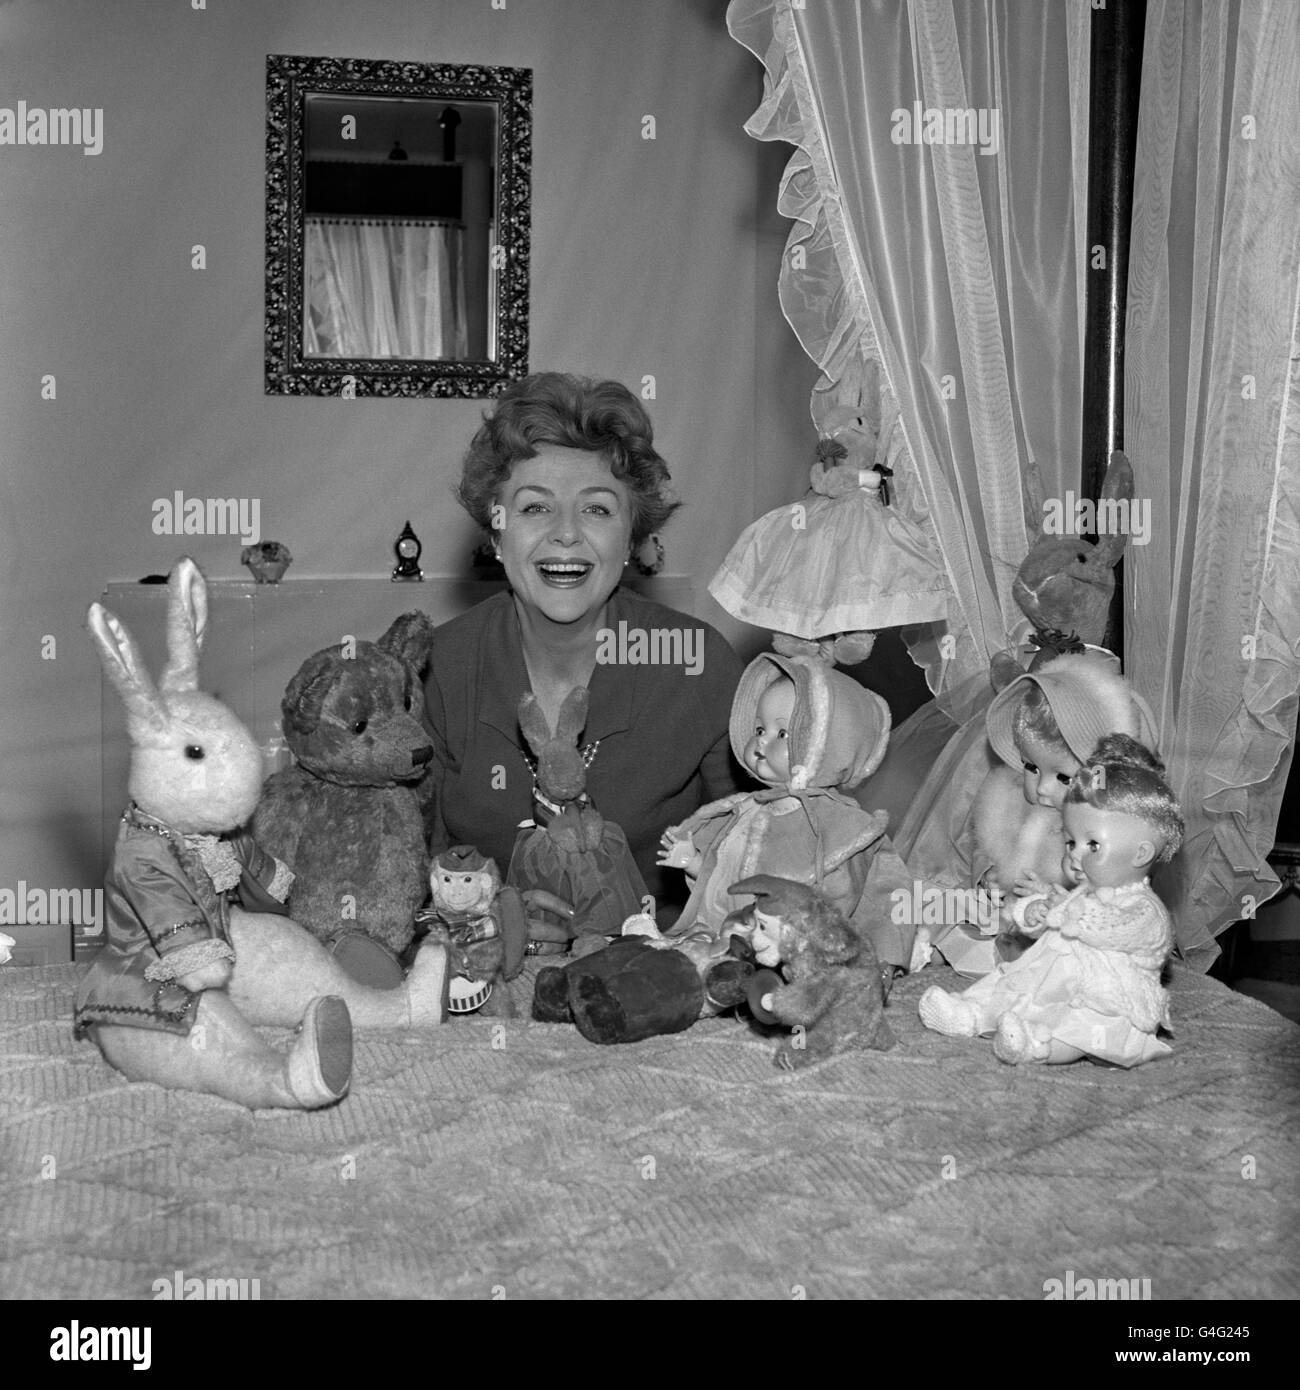 Fernsehpersönlichkeit Noele Gordon bei sich zu Hause mit einigen Puppen, die von ihren Bewunderern anstelle von Fanbriefen geschickt wurden. Viele der Puppen schickt sie in Kinderheime. Stockfoto